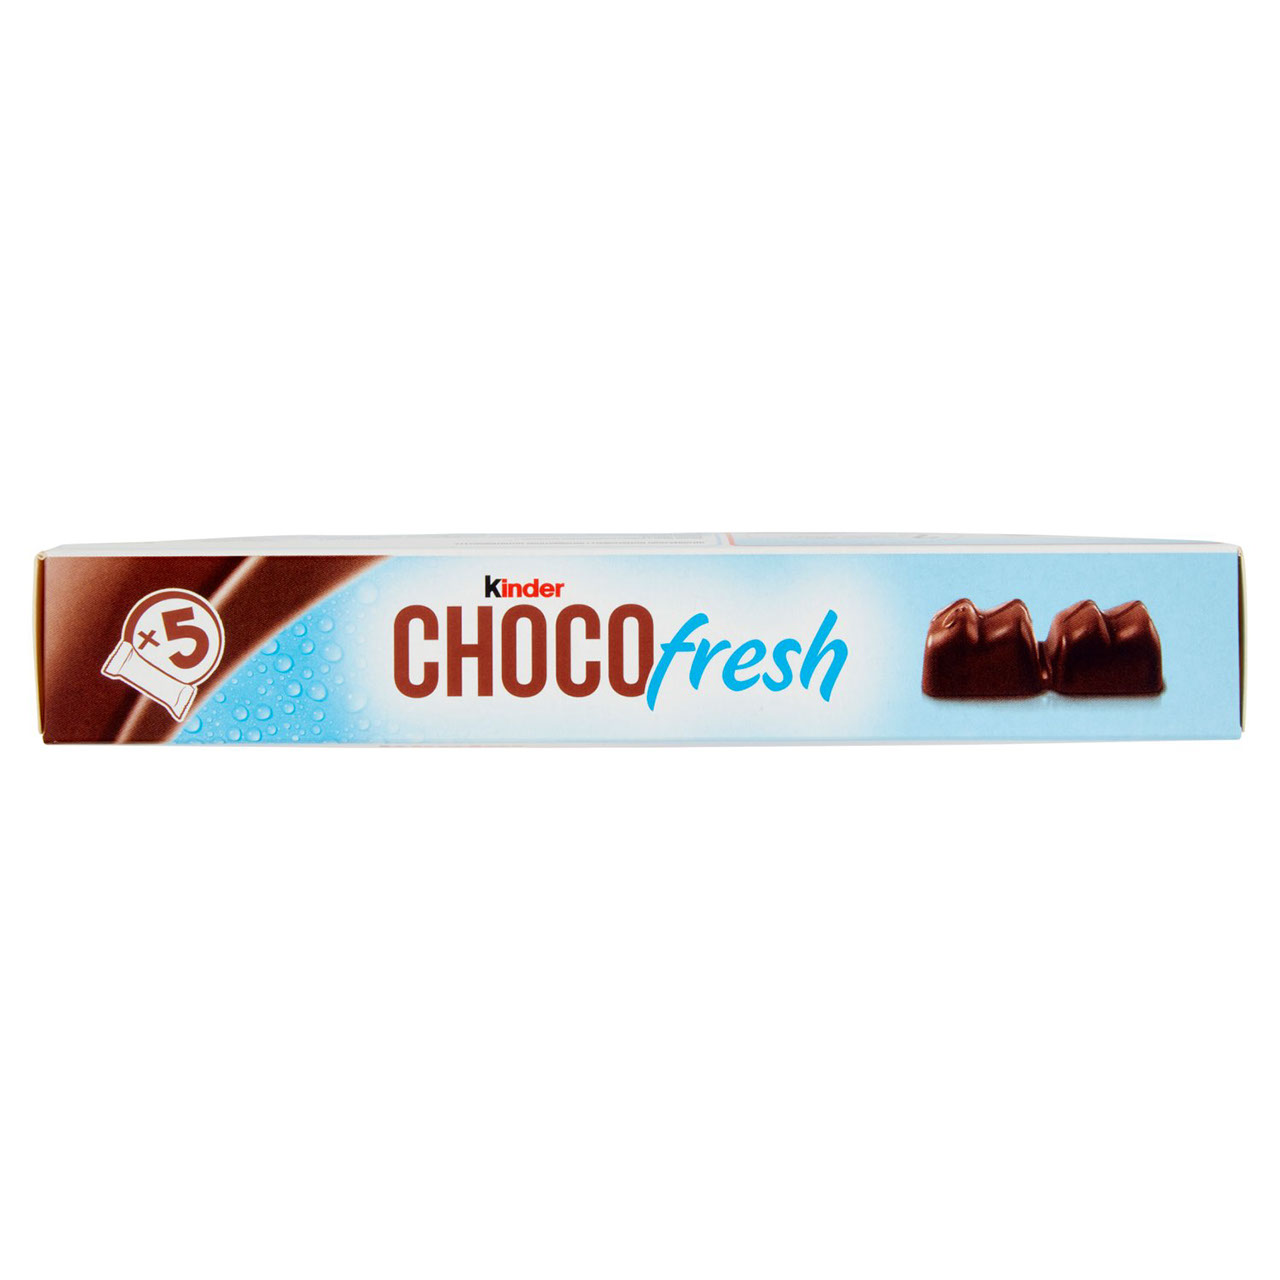 Kinder Choco fresh 5 x 20,5 g in vendita online